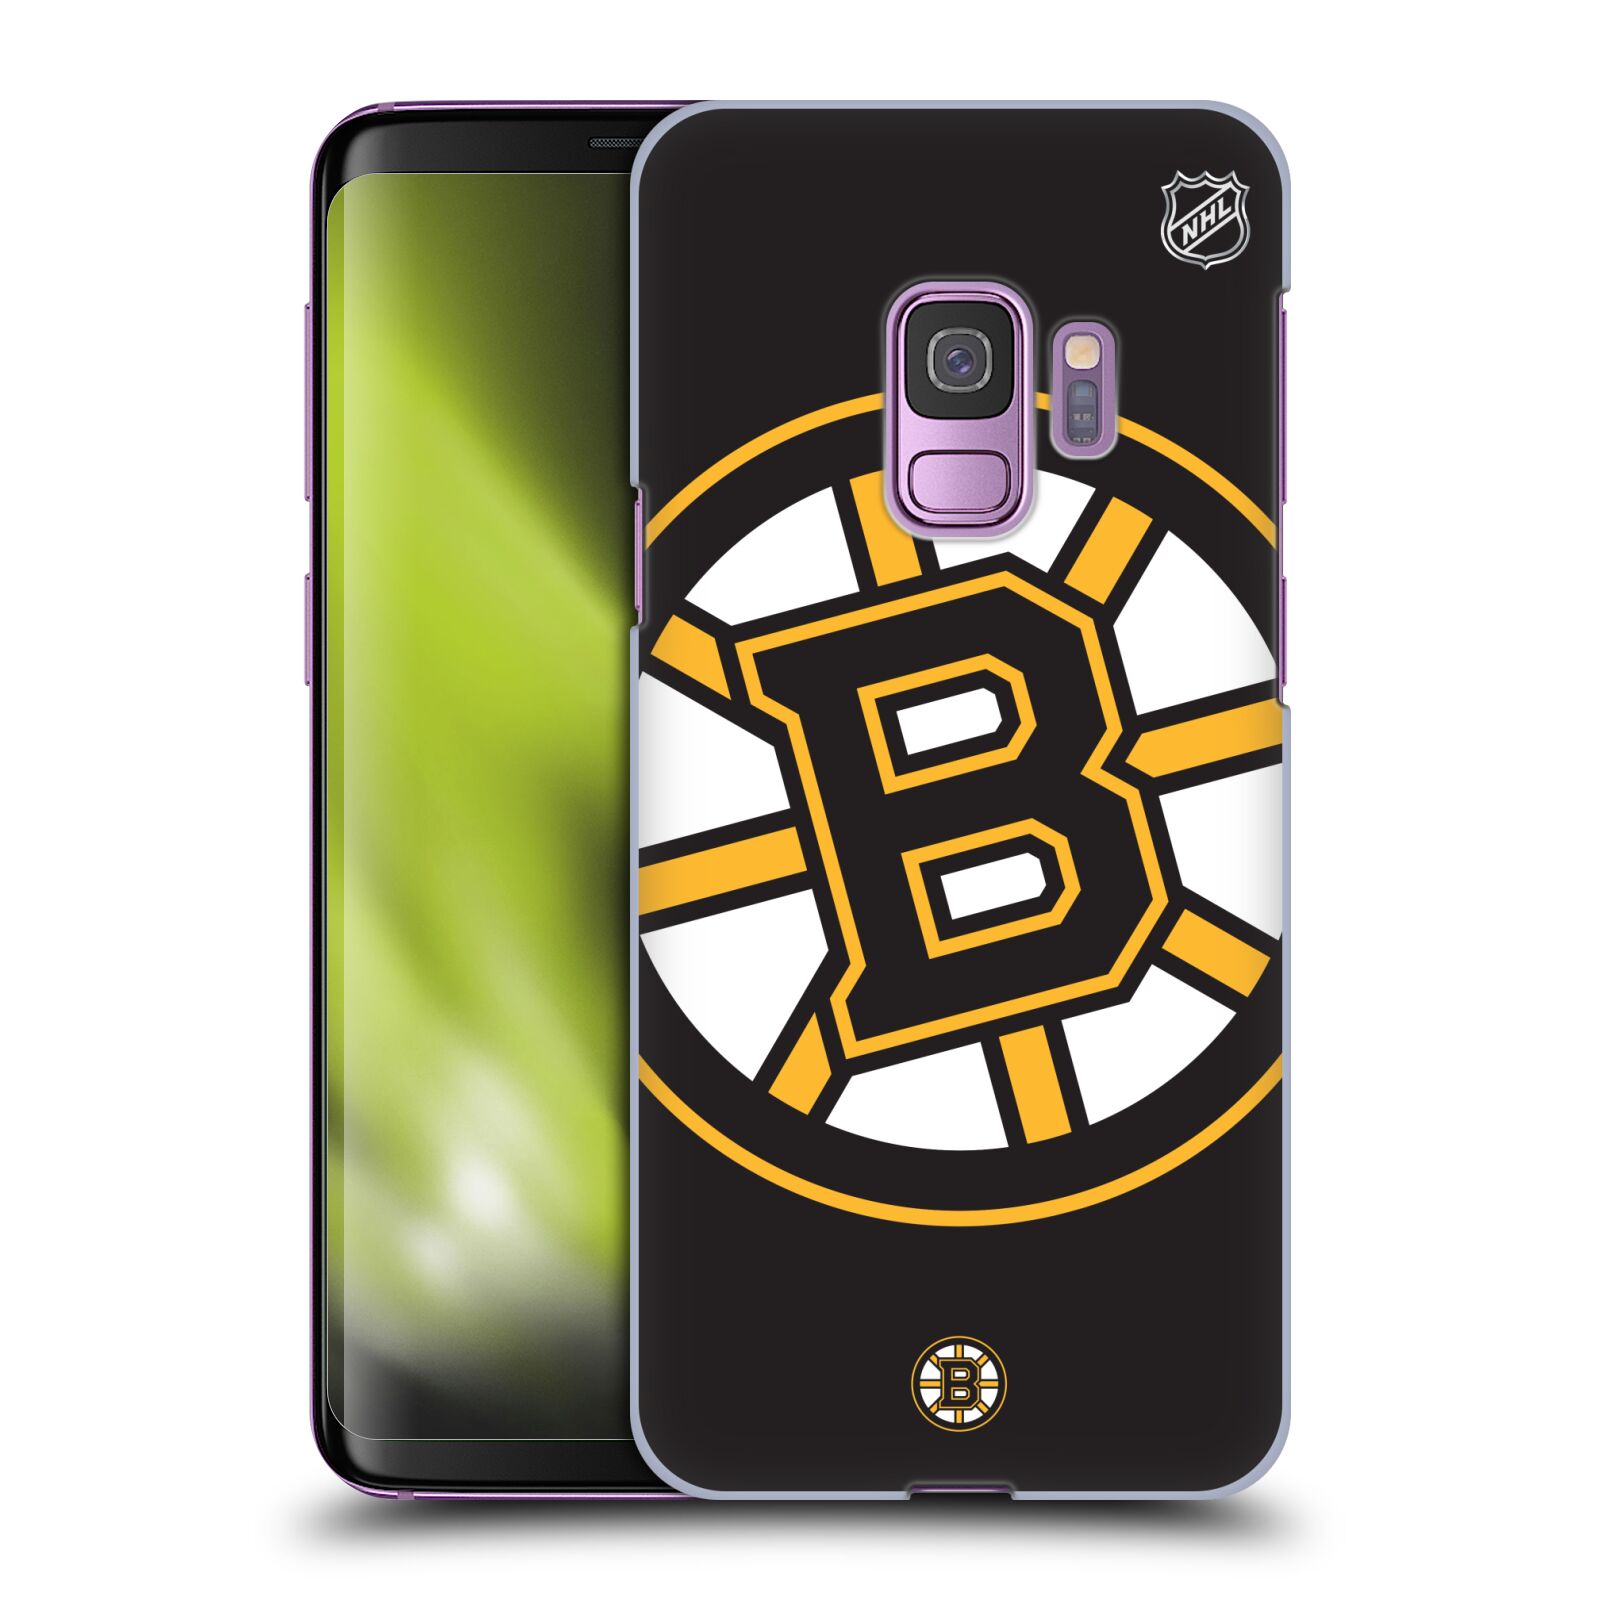 Pouzdro na mobil Samsung Galaxy S9 - HEAD CASE - Hokej NHL - Boston Bruins - velký znak